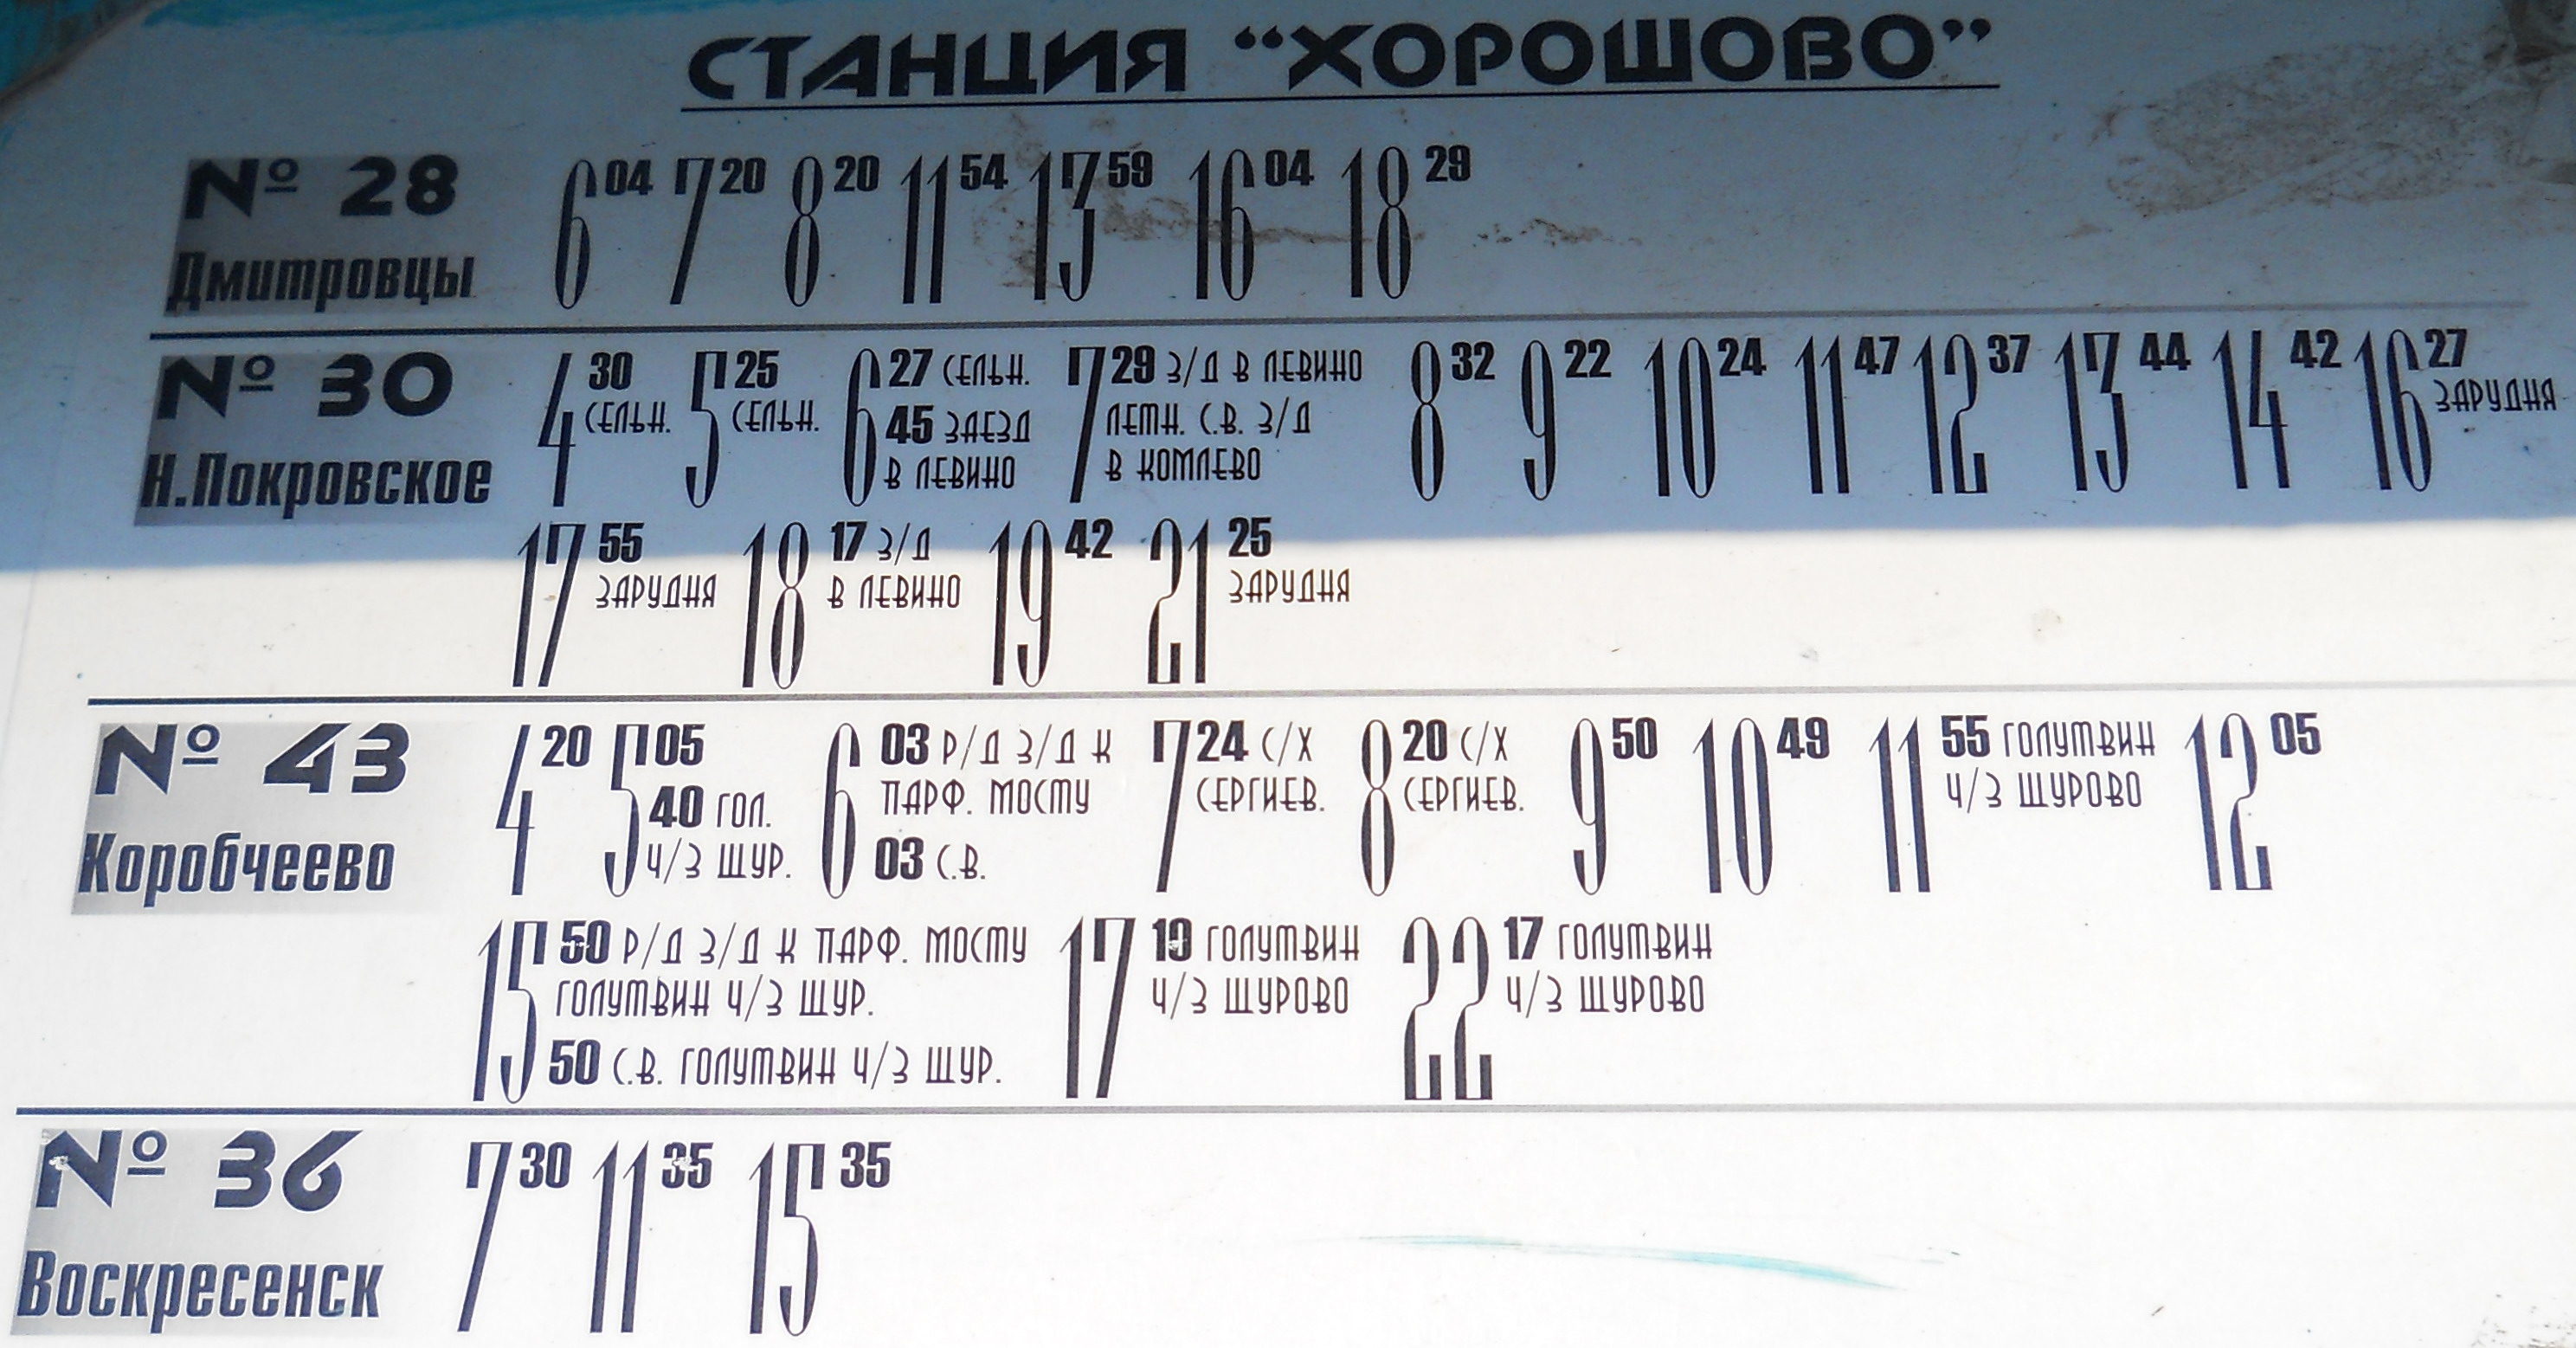 Расписание автобуса 36 коломна воскресенск